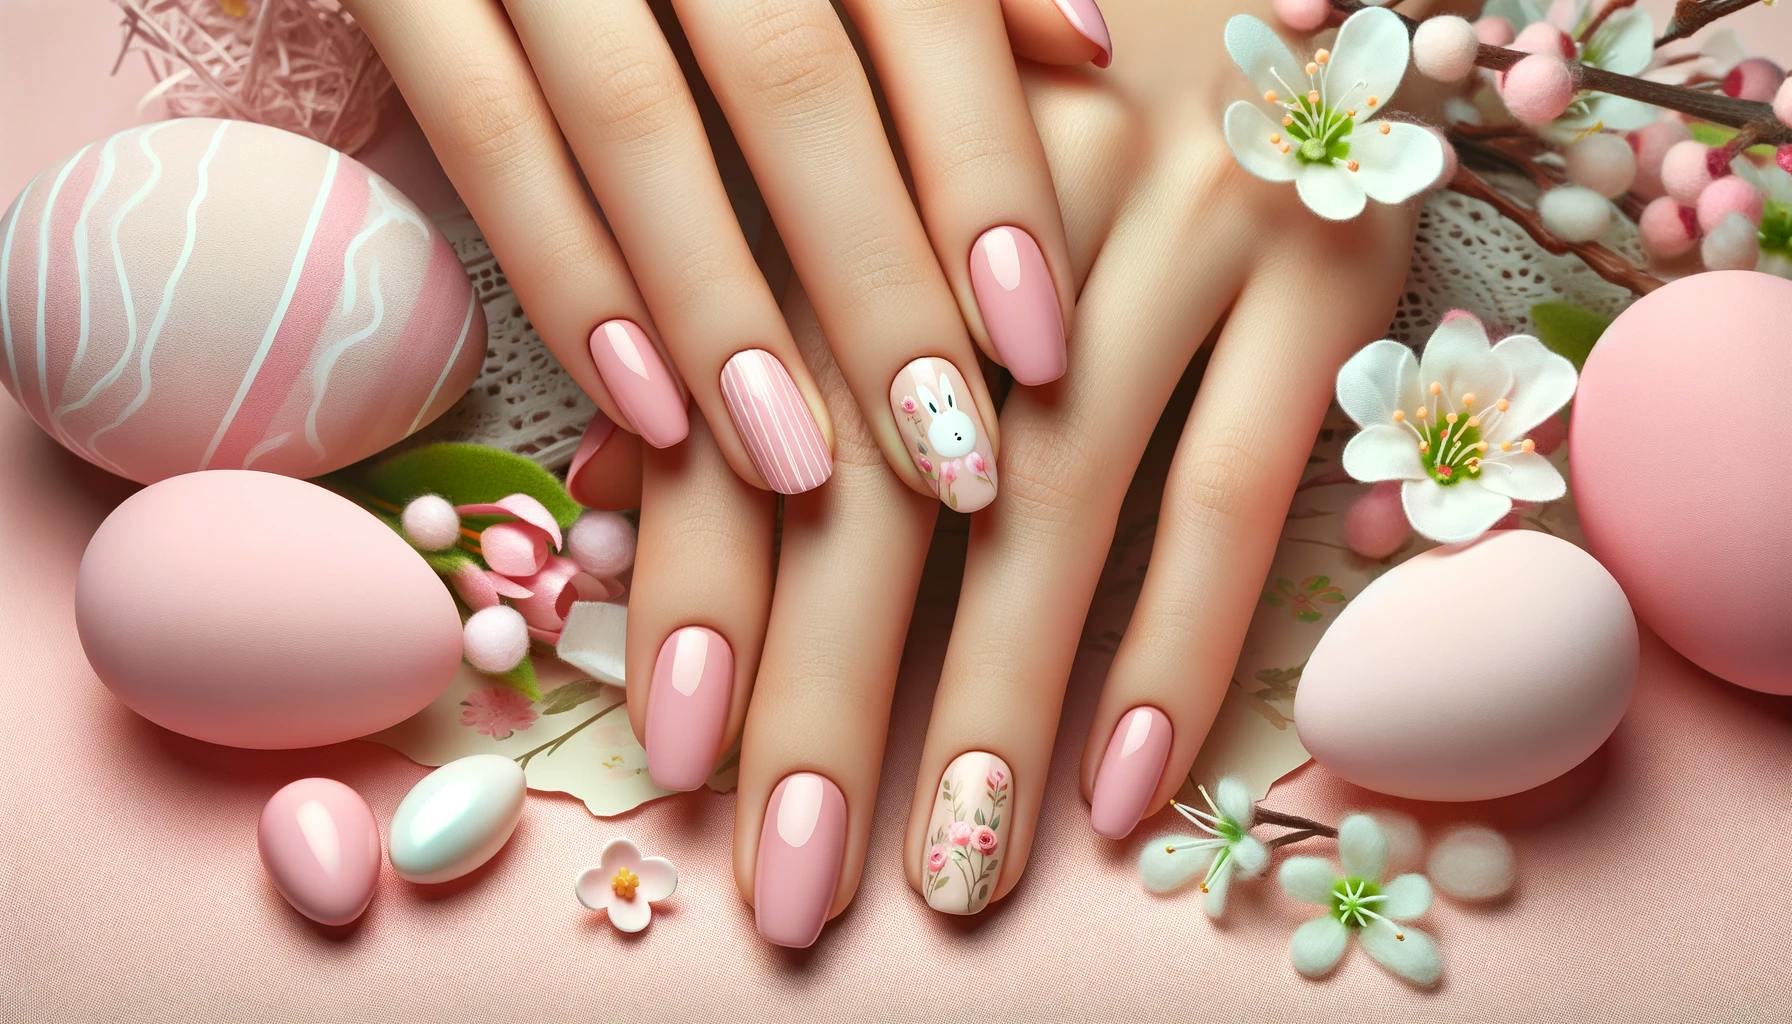 Delikatne różowe paznokcie na święta wielkanocne z subtelnie wplecionymi motywami wiosennymi, takimi jak male kwiaty i pastelowe jajka, na tle kwitnących kwiatów i pastelowych barw, idealne dla świątecznego i wiosennego nastroju